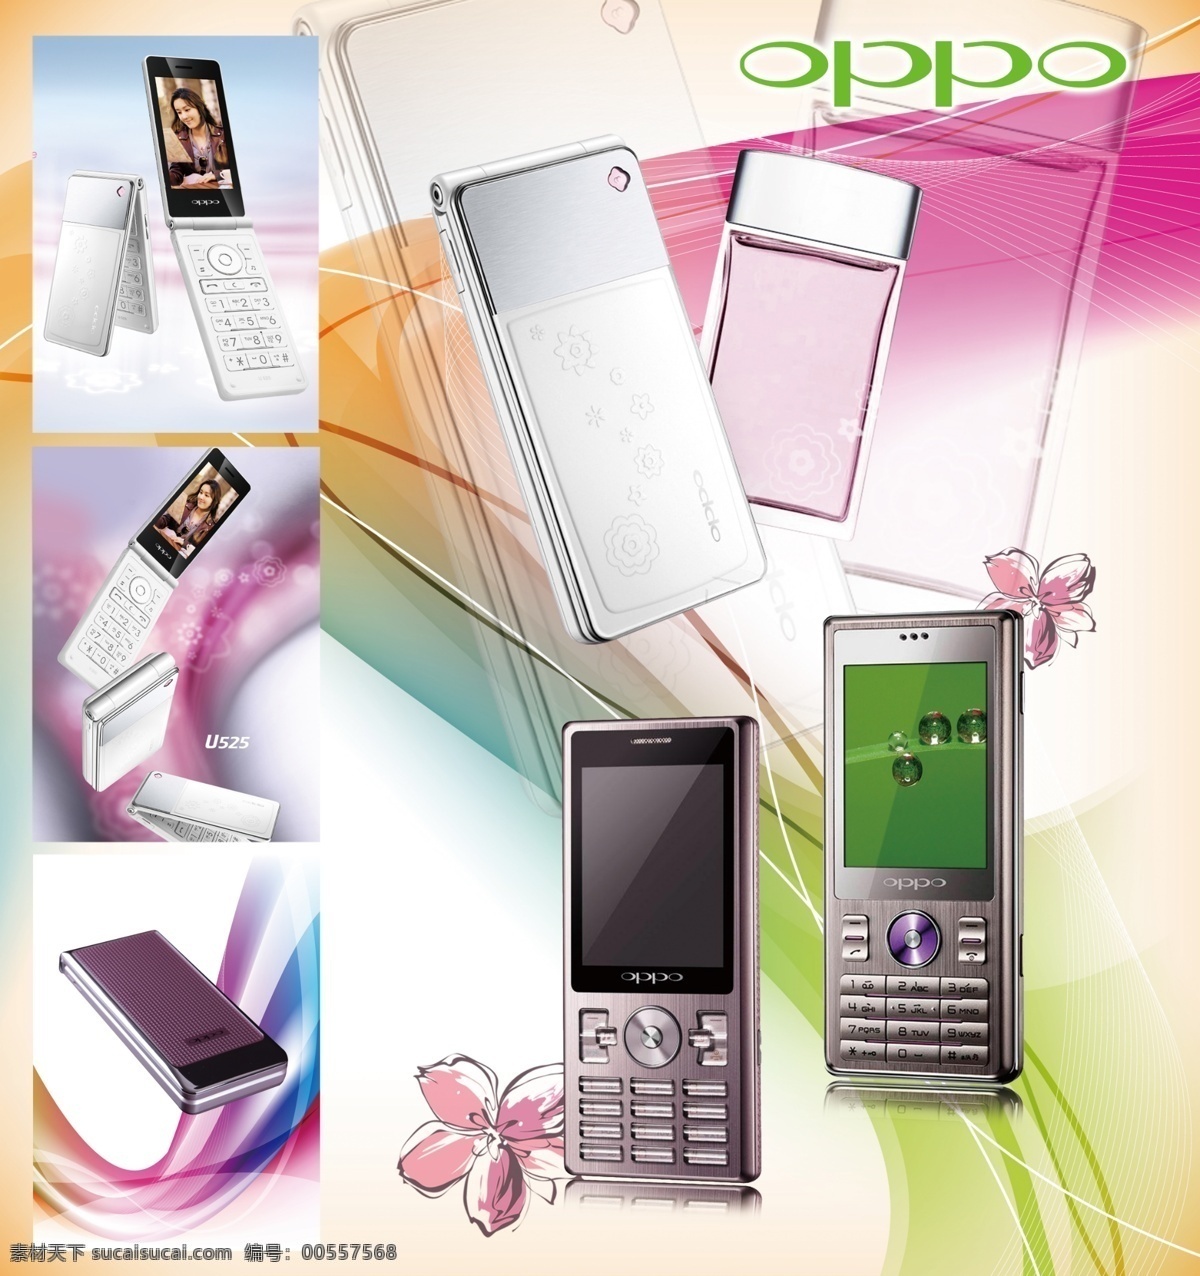 oppo海报 oppo oppo手机 f15 a203 u529 u525 a113 a520 多款手机 梦幻背景 oppologo 广告设计模板 源文件